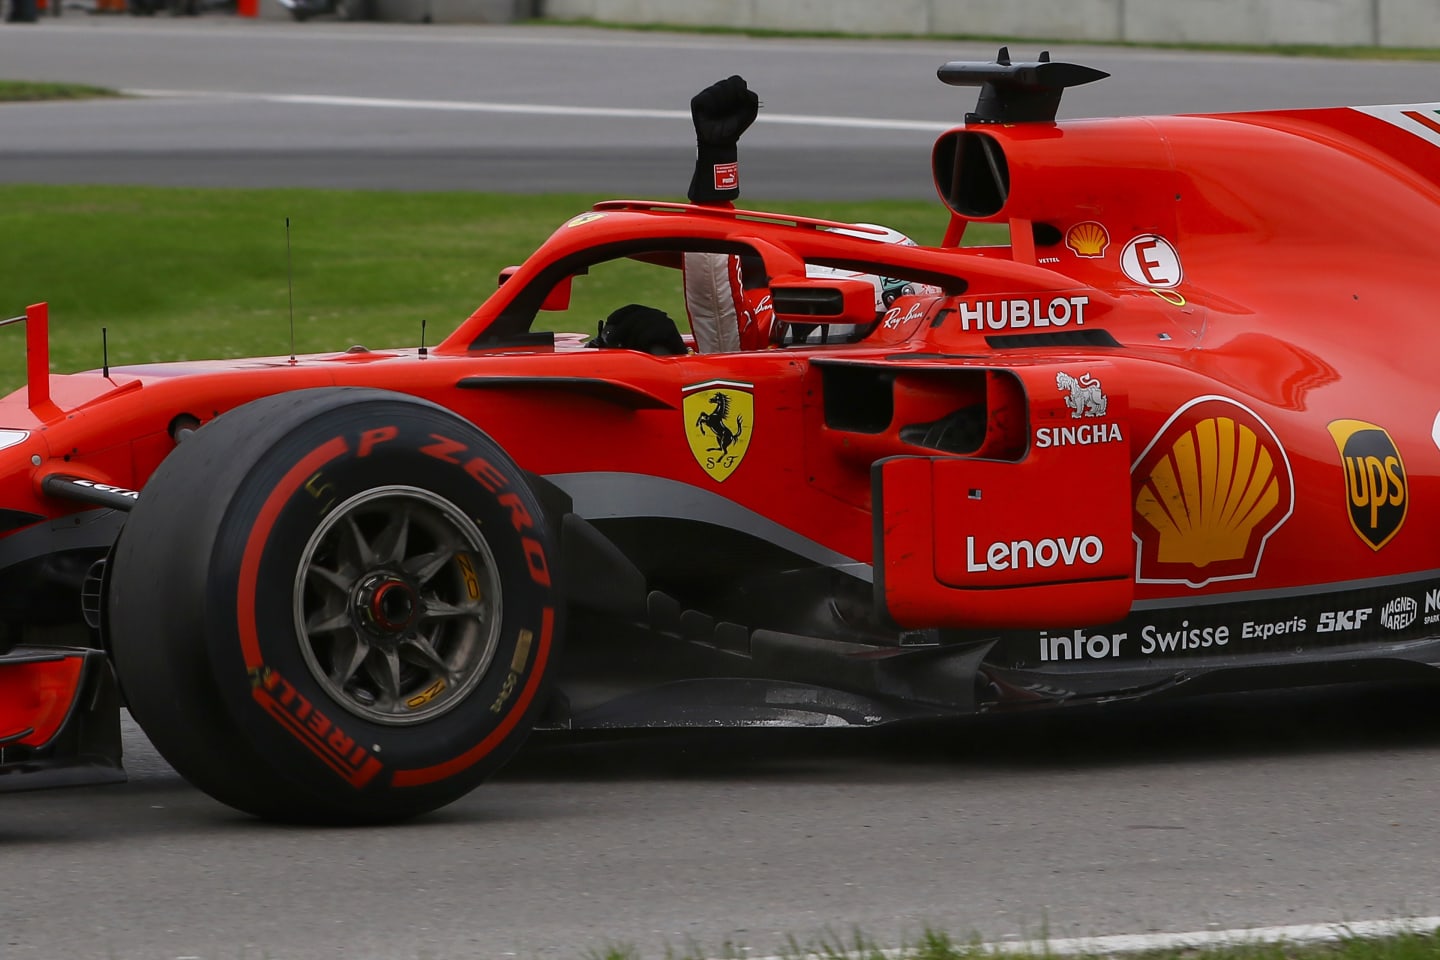 www.sutton-images.com

Race winner Sebastian Vettel (GER) Ferrari SF-71H waves at the end of the